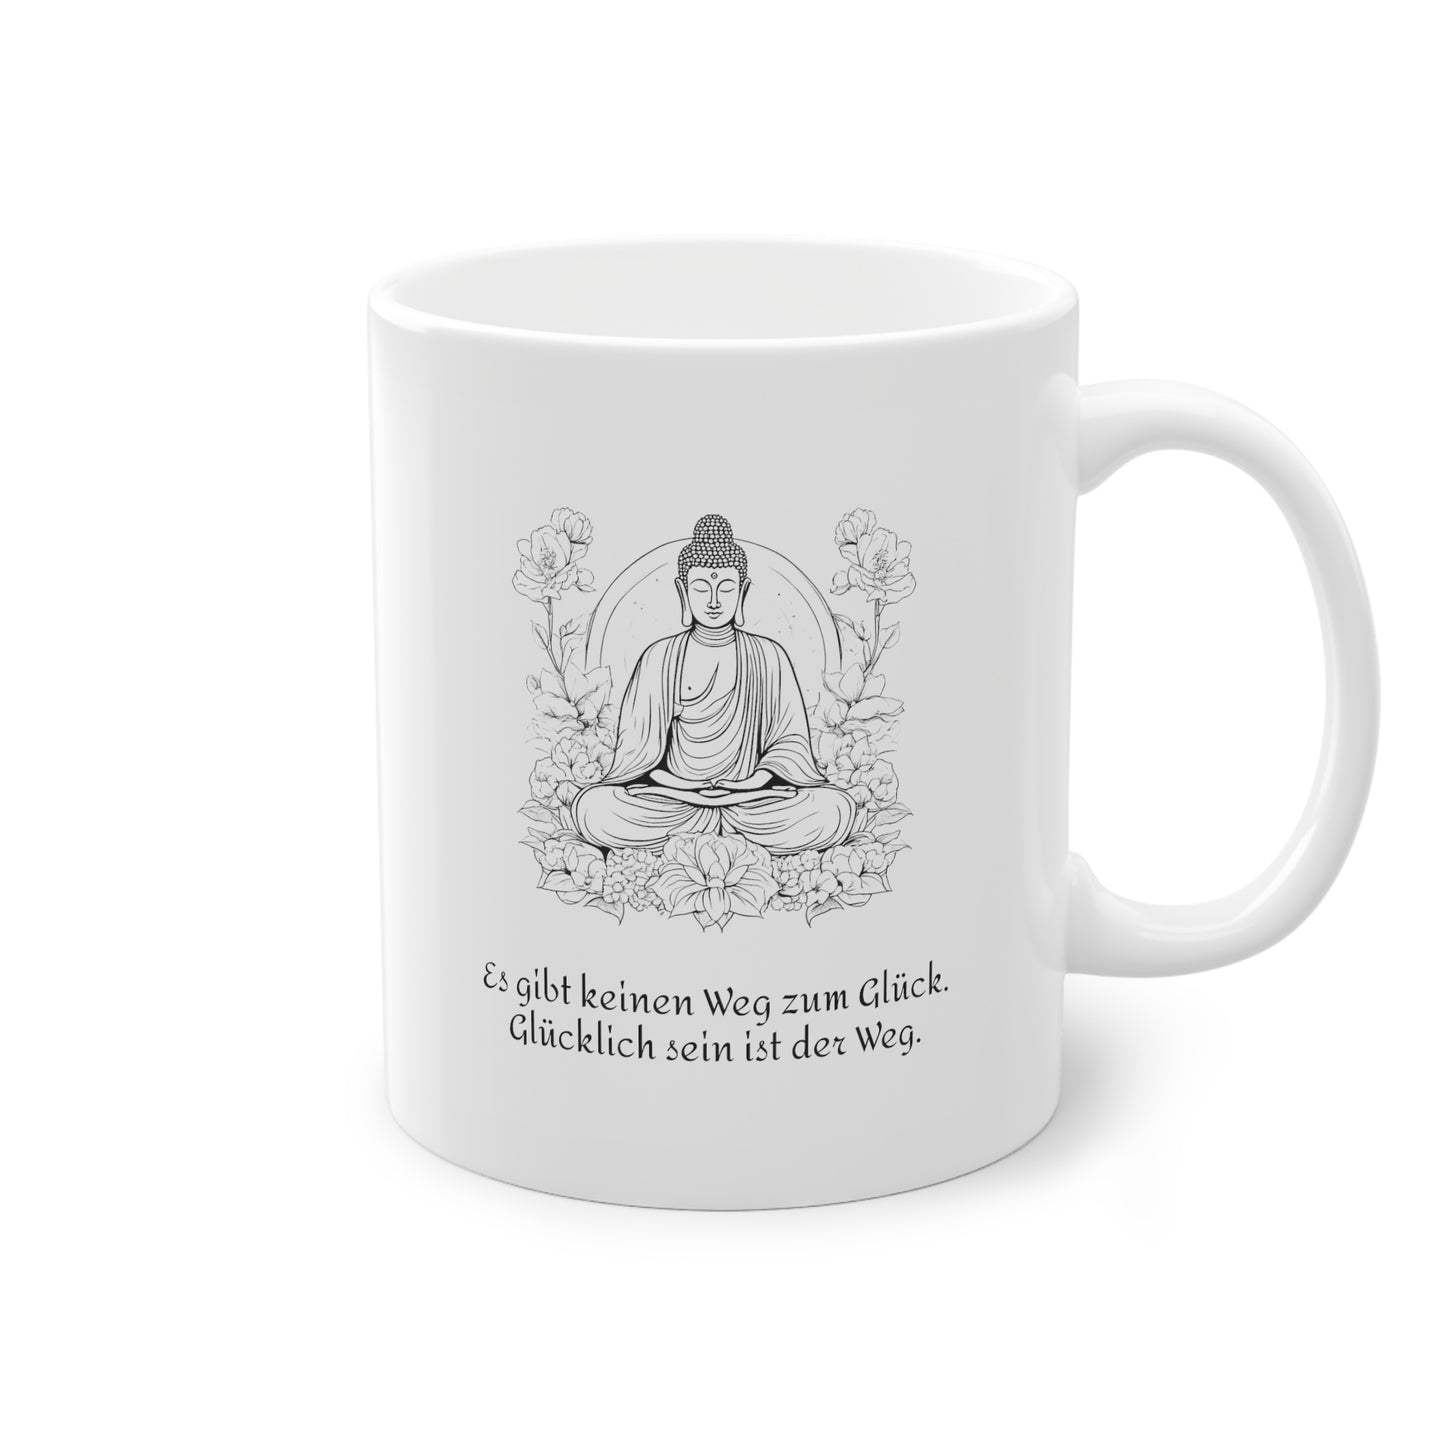 Copy of Weisse Tasse Sinnspruch Buddha "Glück"